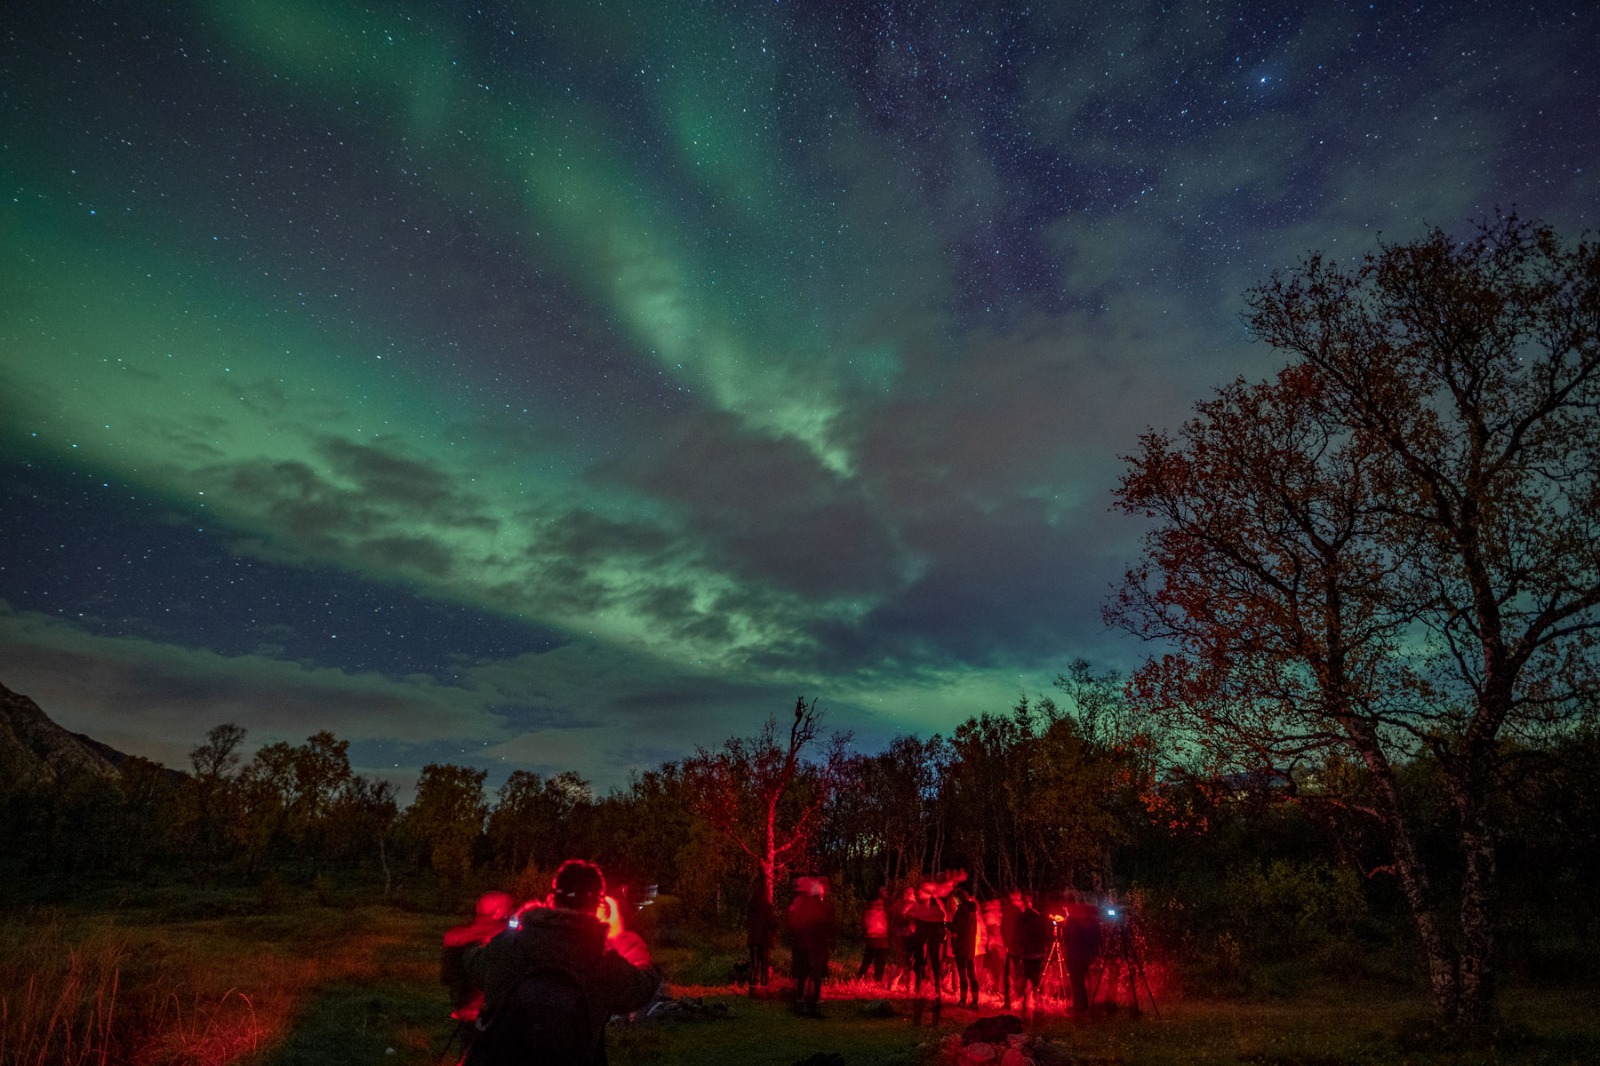 Representantes del Proyecto “Cielos de Andalucía” visitan la Comuna de Tromso, en Noruega, para trasladar experiencias exitosas de turismo astronómico a Sierra Morena.